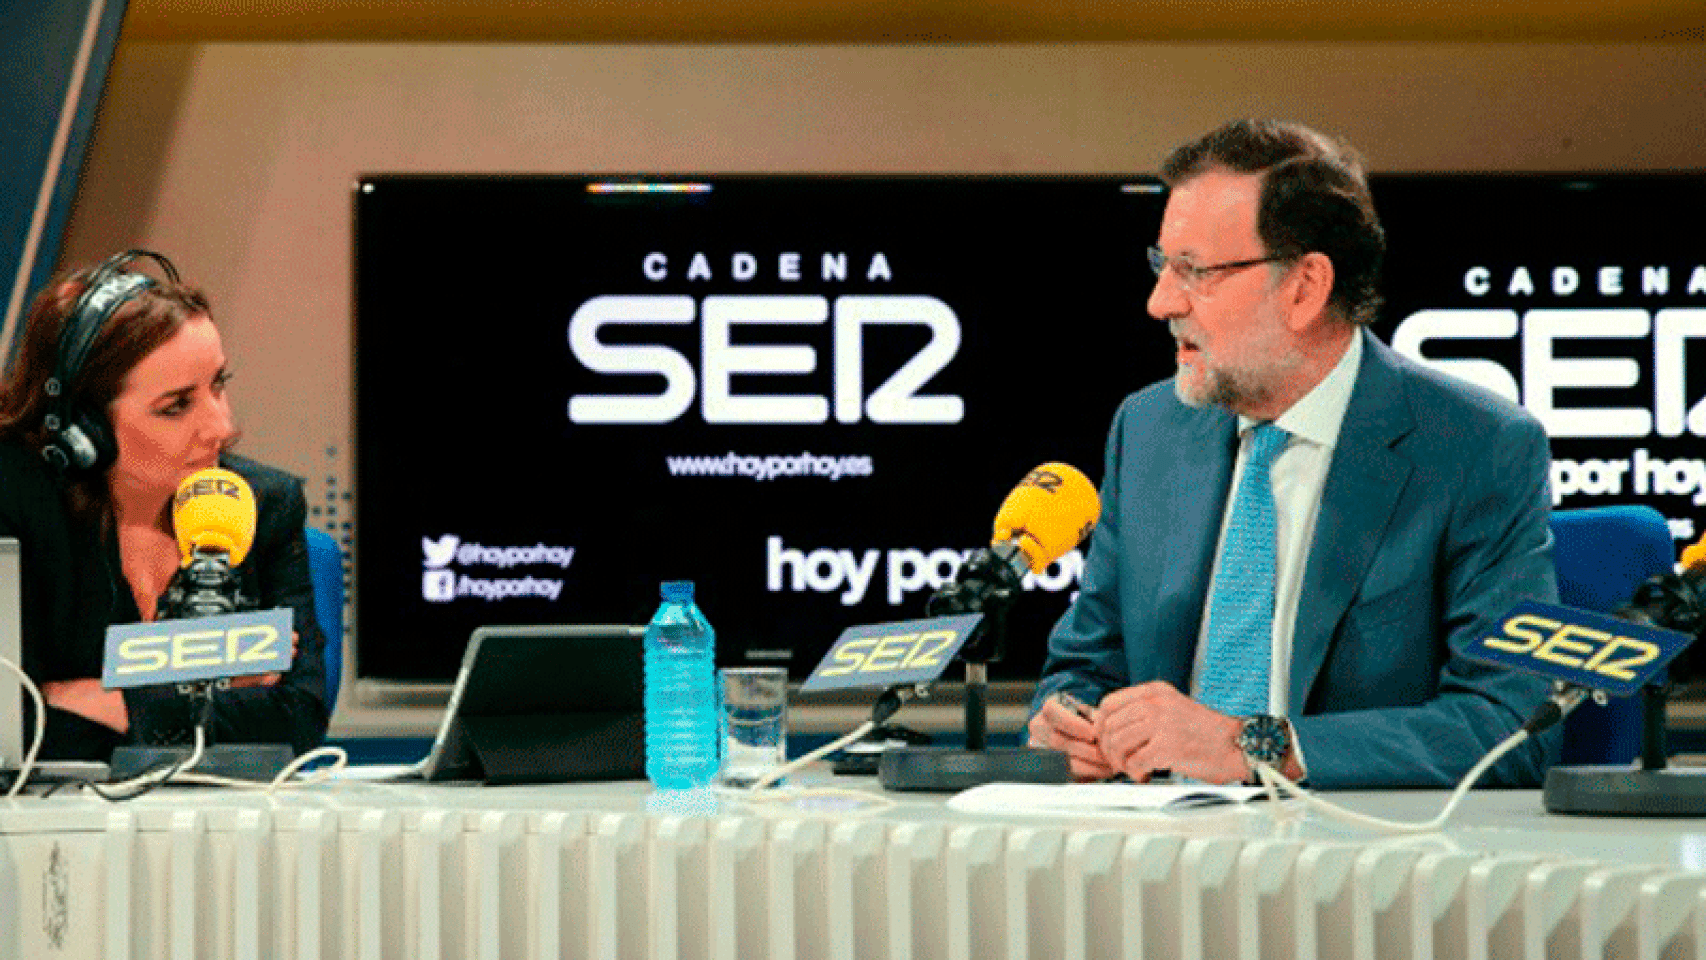 Mariano Rajoy durante la entrevista de hoy en la Cadena SER.